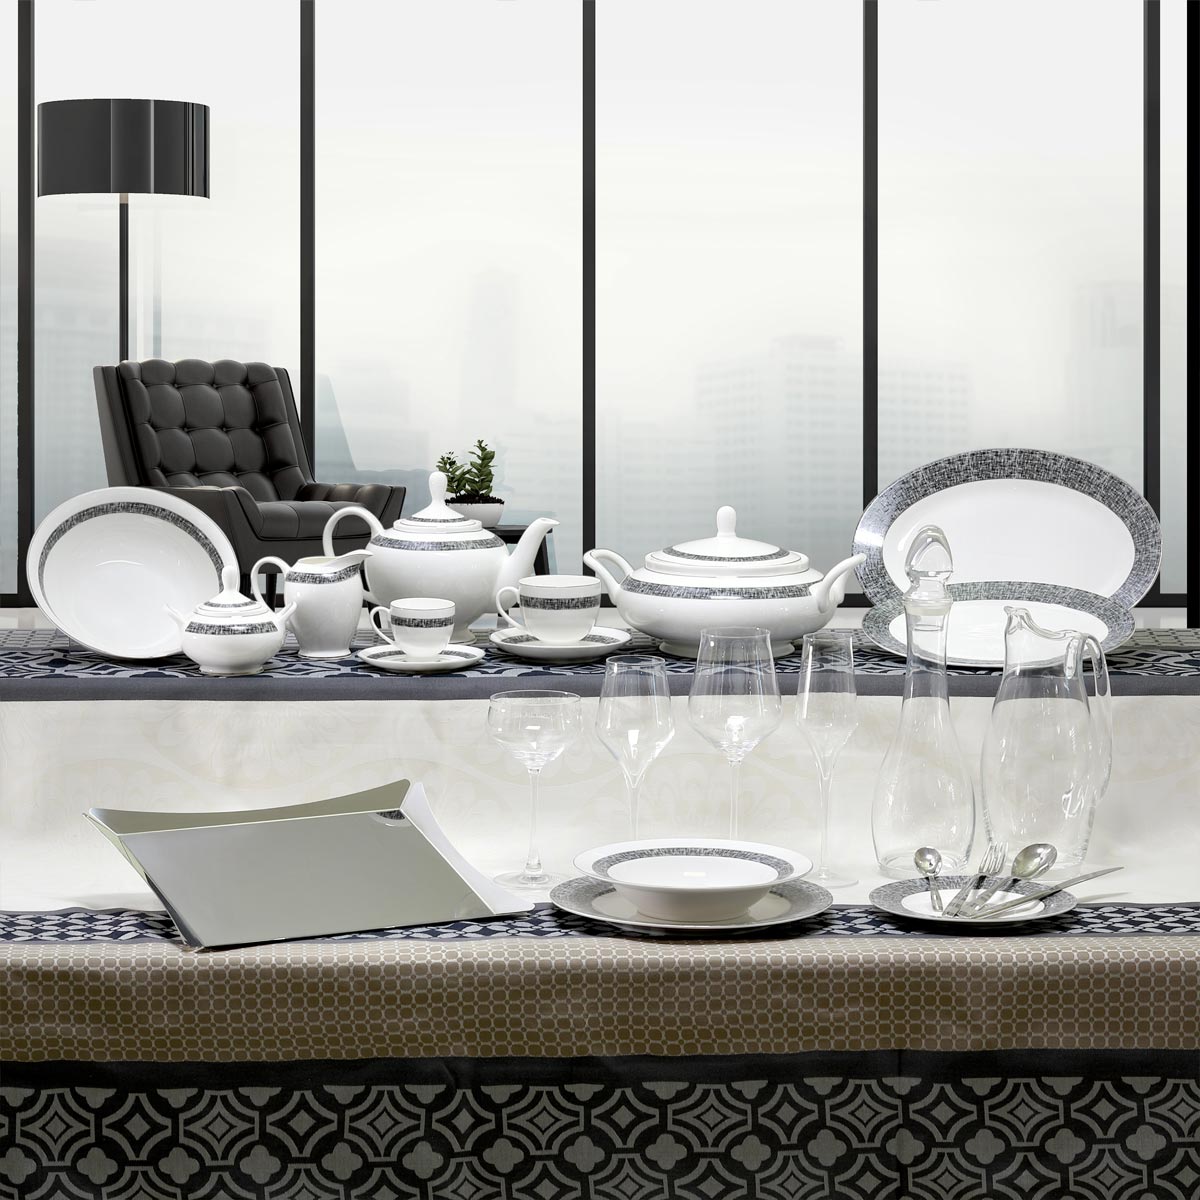 Coordinato piatti e bicchieri stile contemporaneo grigio e nero - New York